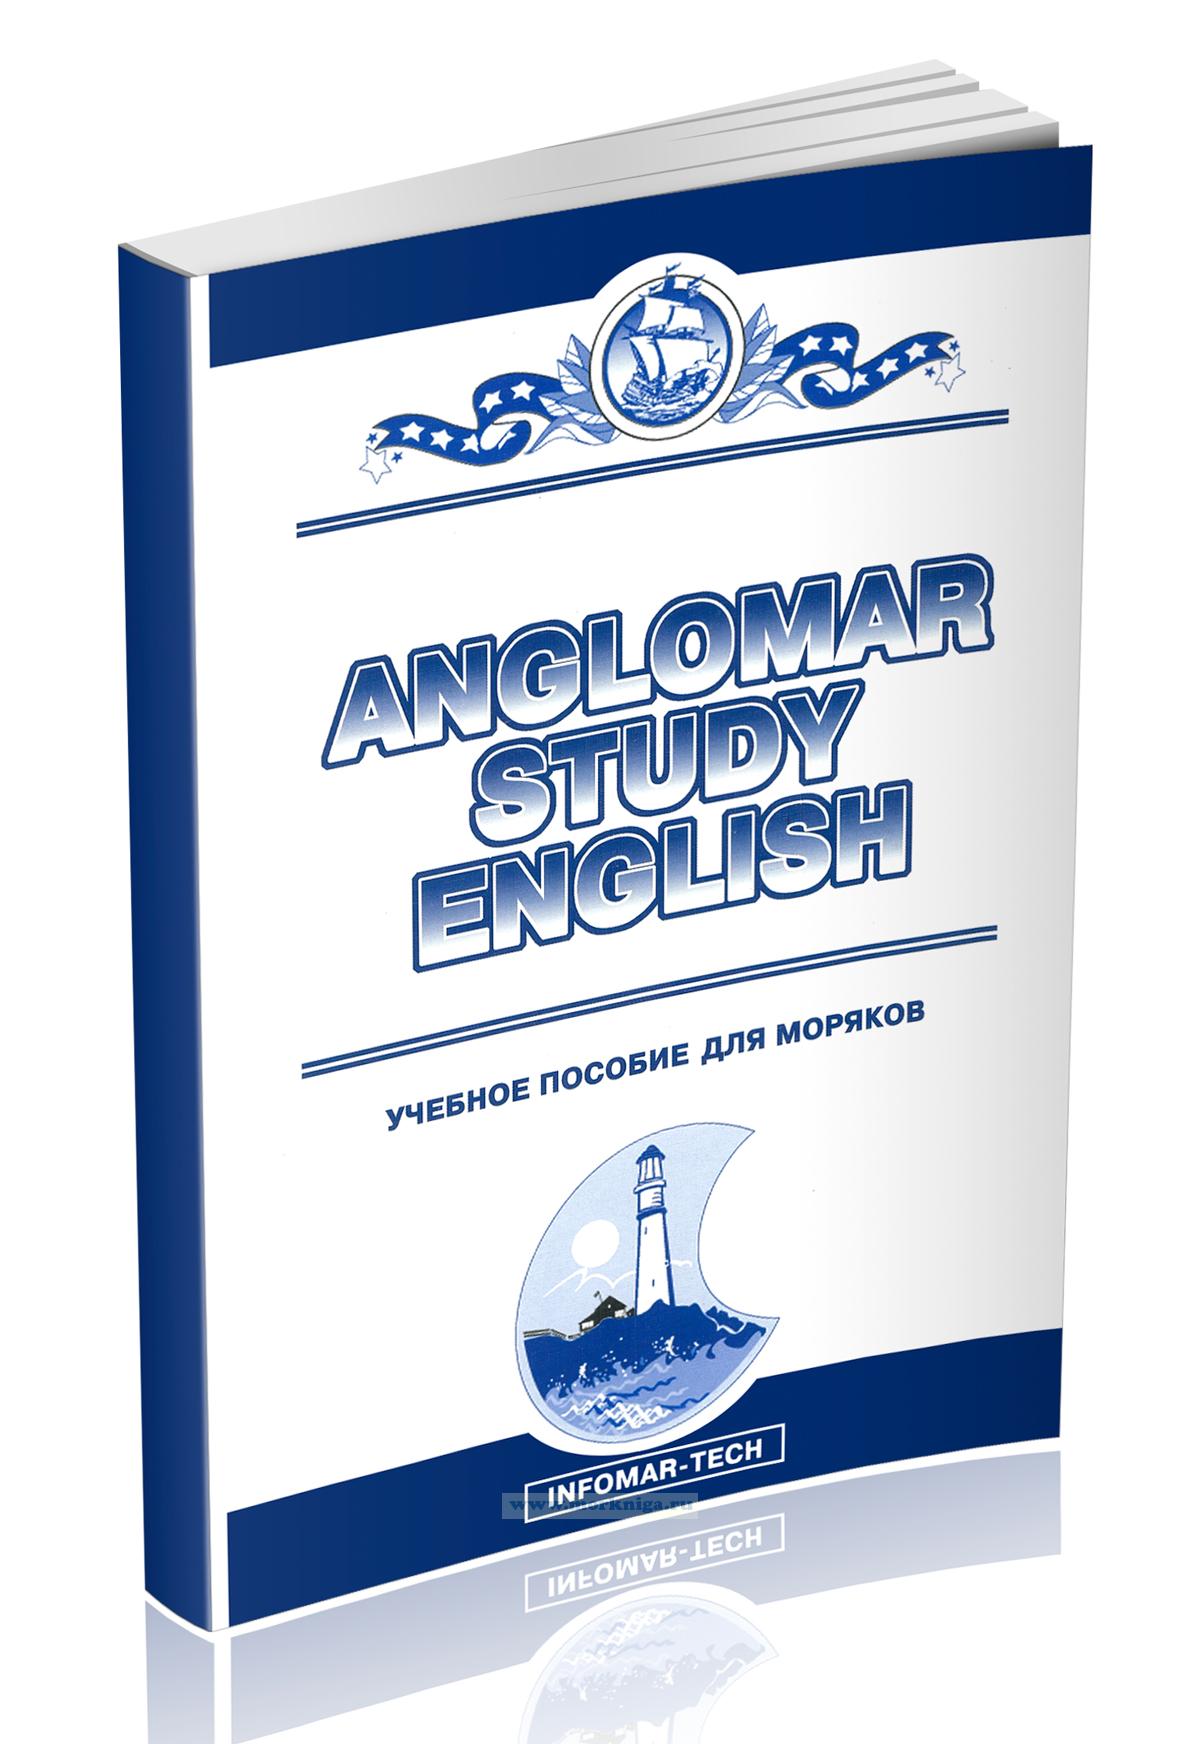 Anglomar Study English: Учебное пособие для моряков +2 CD